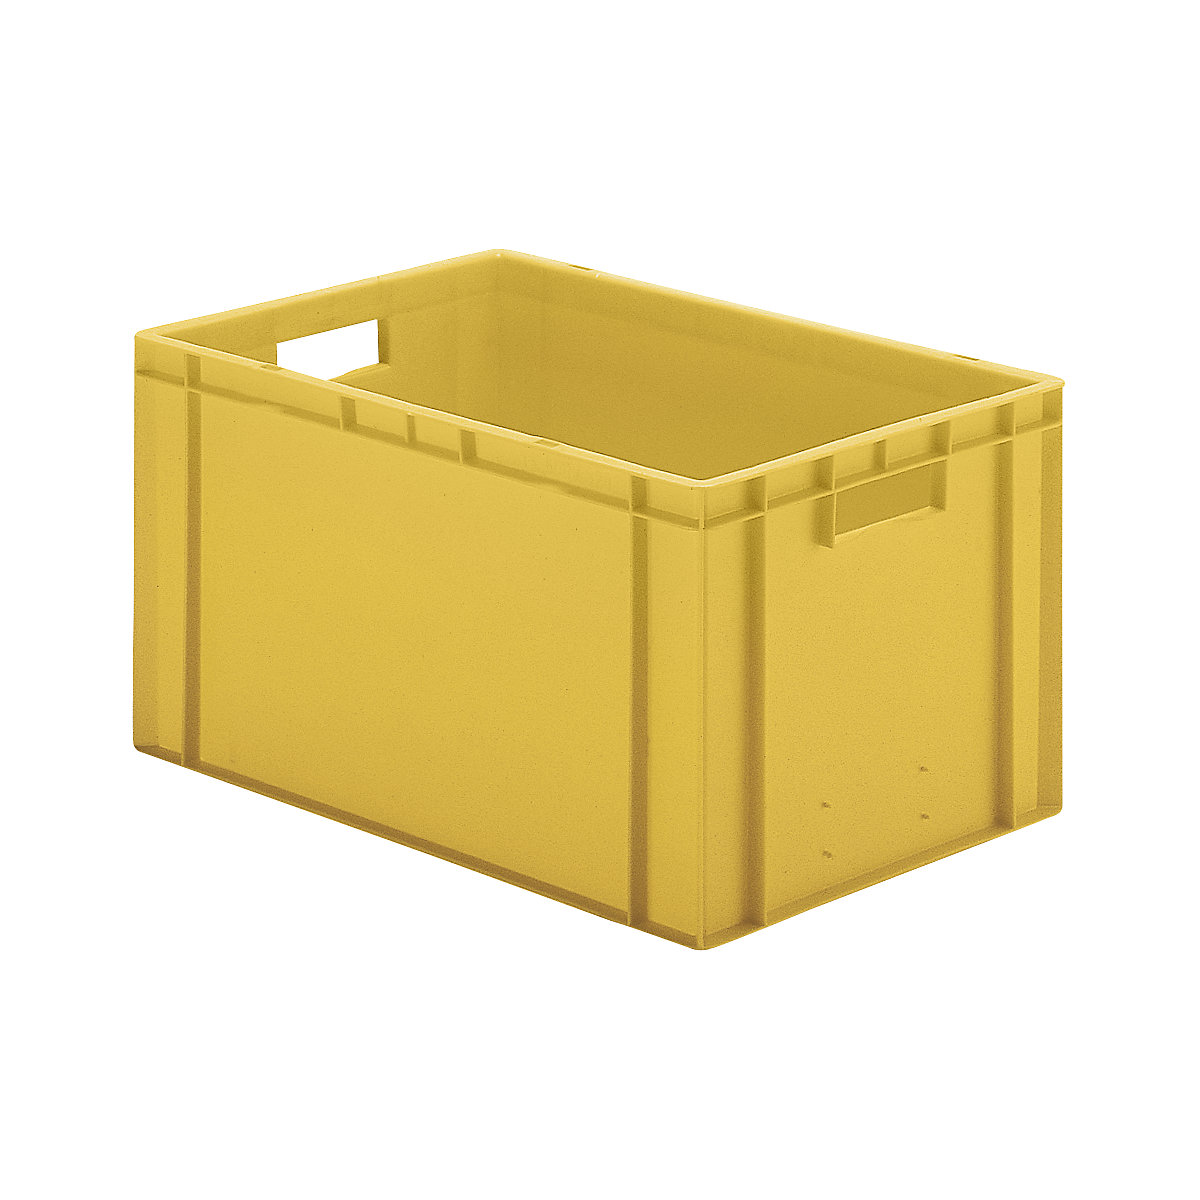 Euro-Format-Stapelbehälter, Wände und Boden geschlossen, LxBxH 600 x 400 x 320 mm, gelb, VE 5 Stk